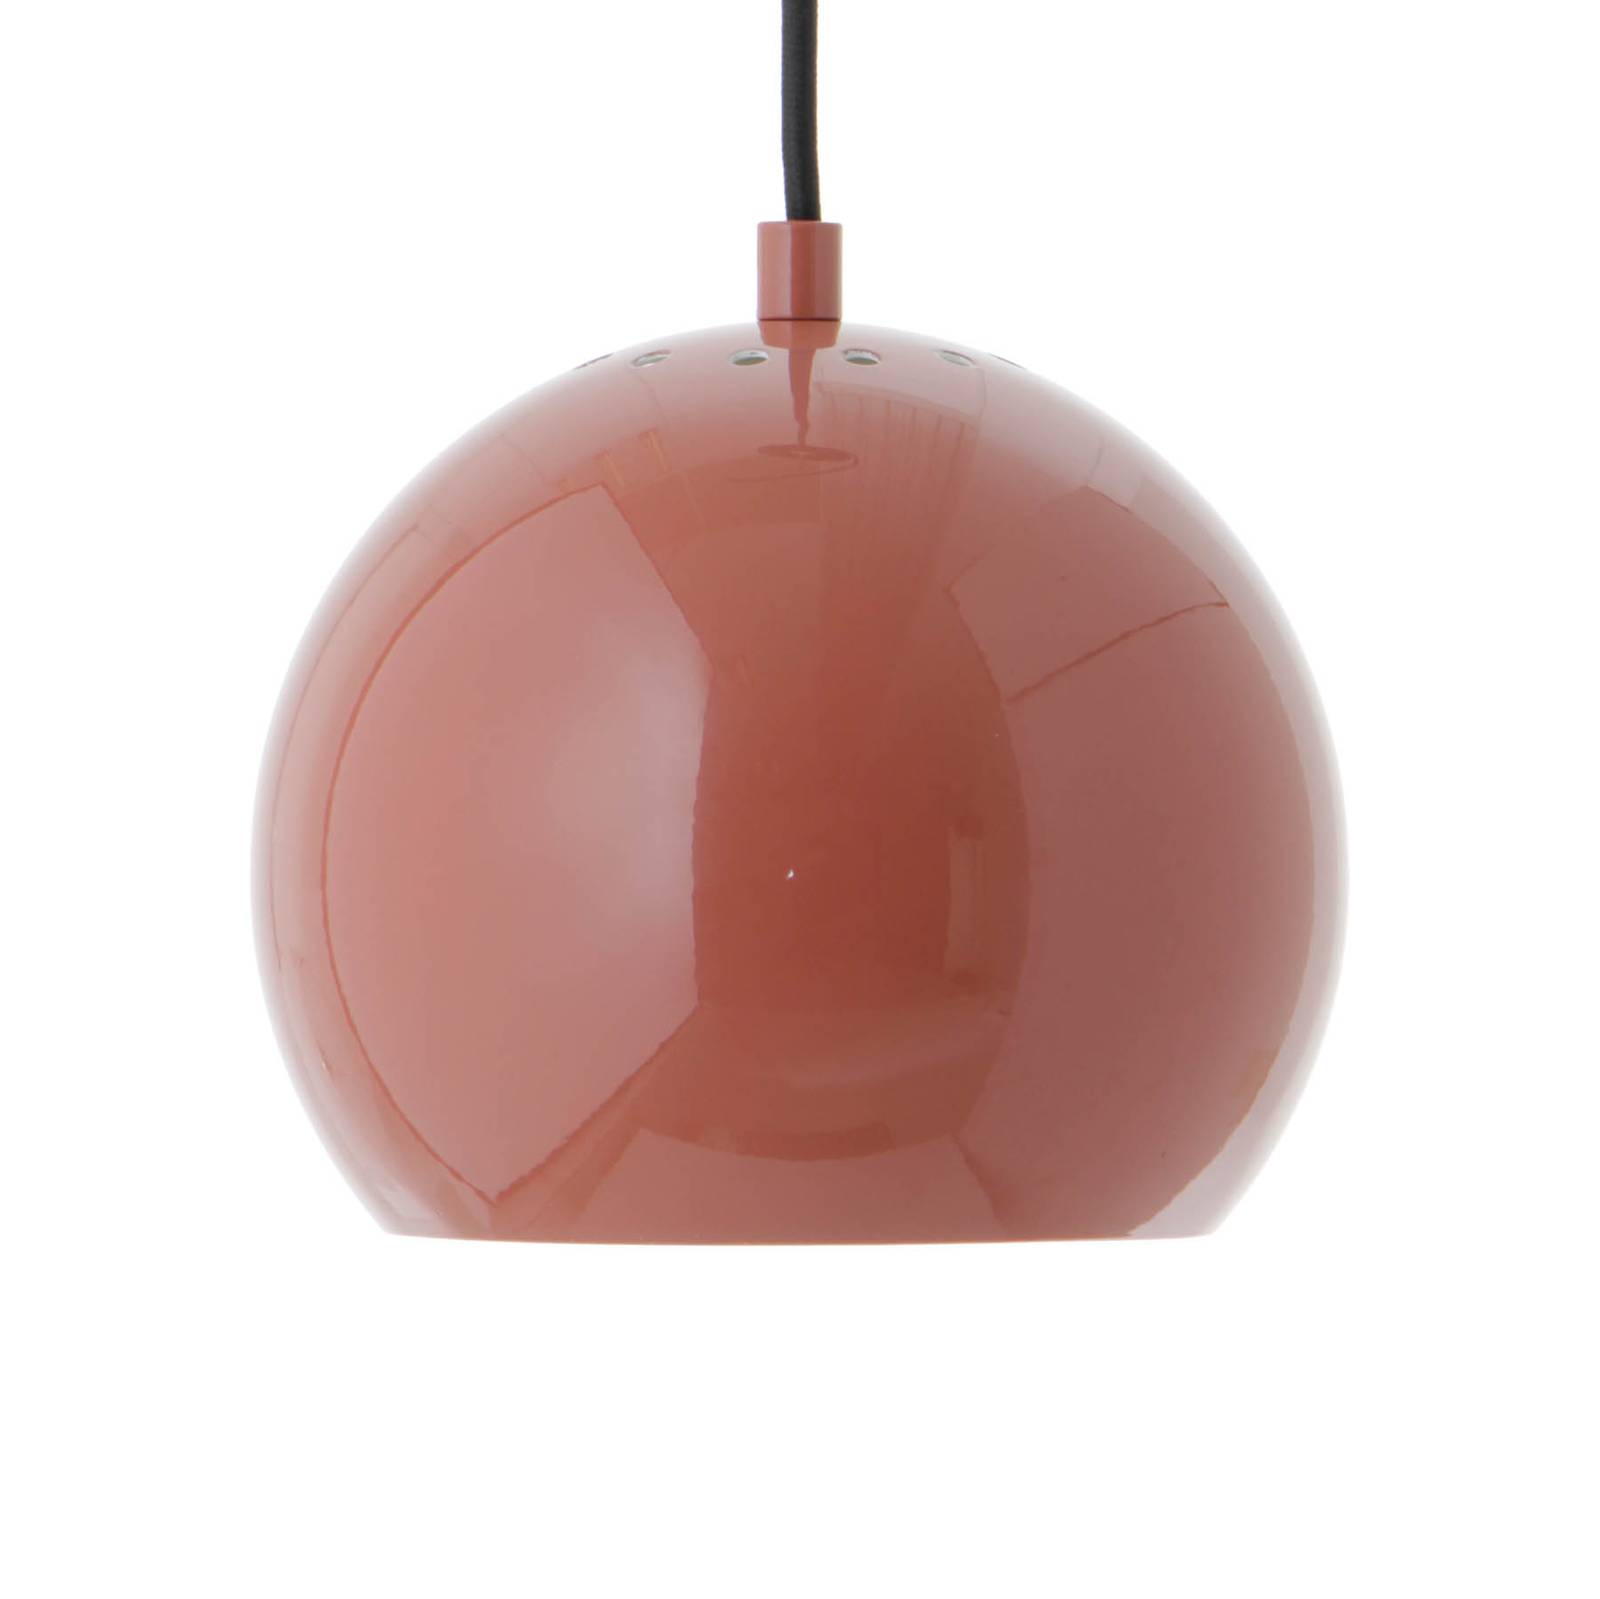 FRANDSEN Hängeleuchte Ball, rot, Ø 18 cm